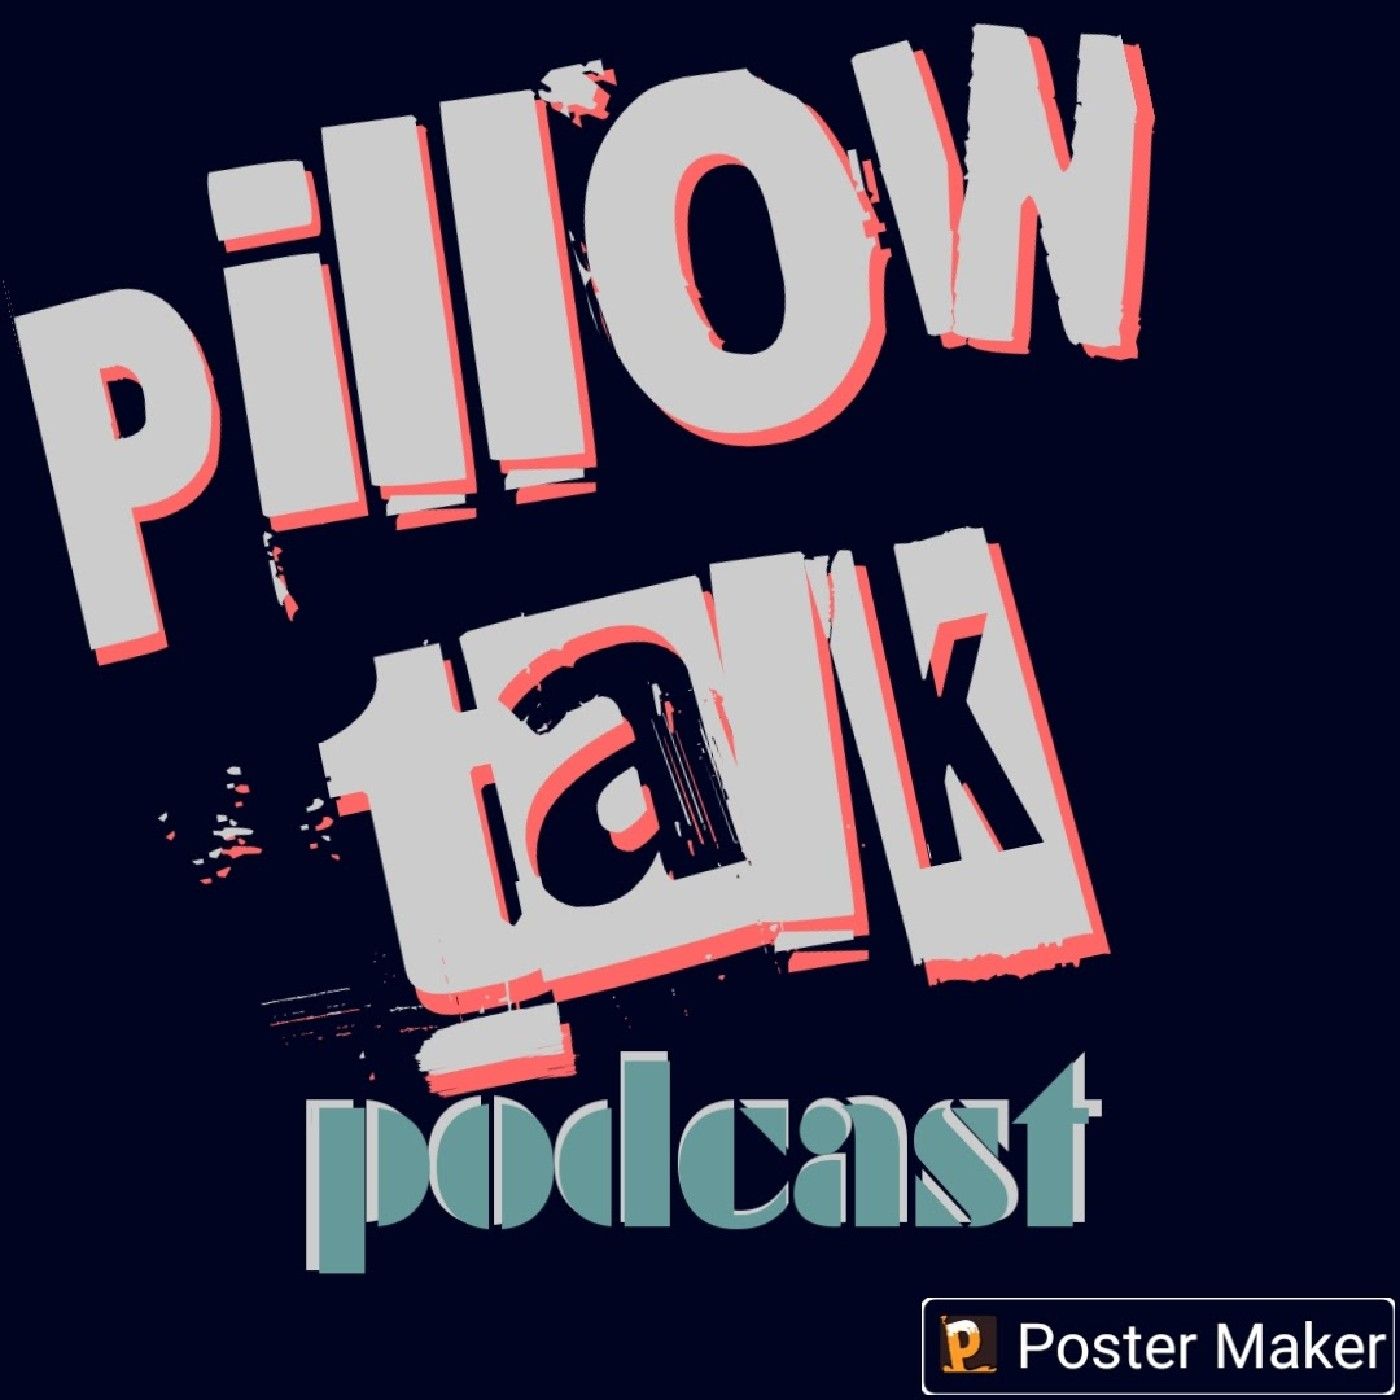 Episode 1 - PILLOW TALK